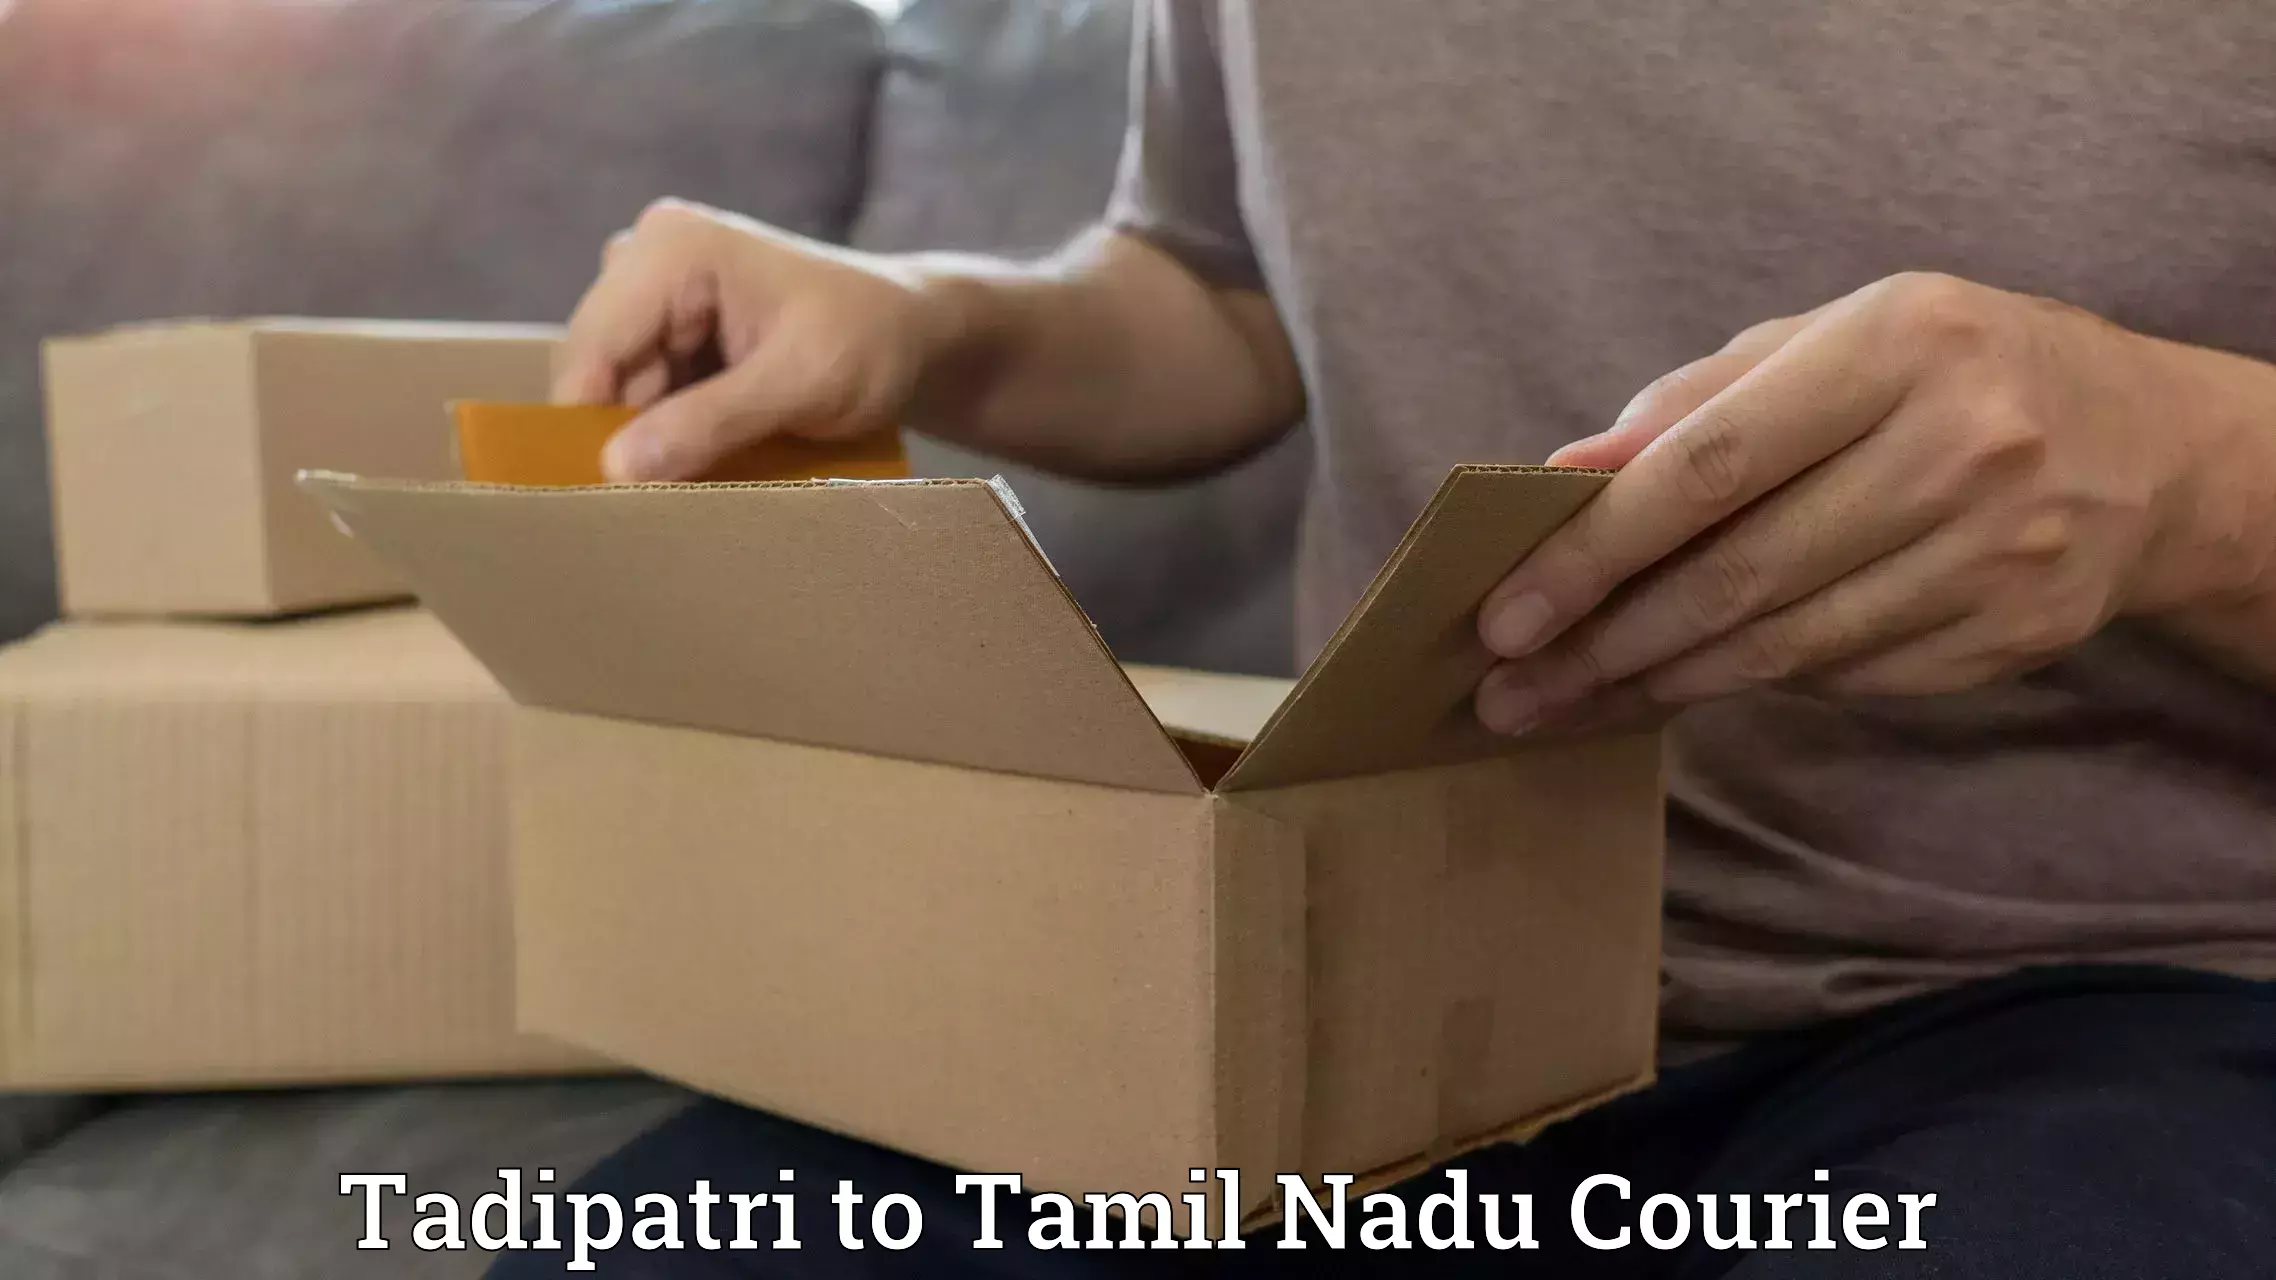 Easy access courier services Tadipatri to Puliampatti